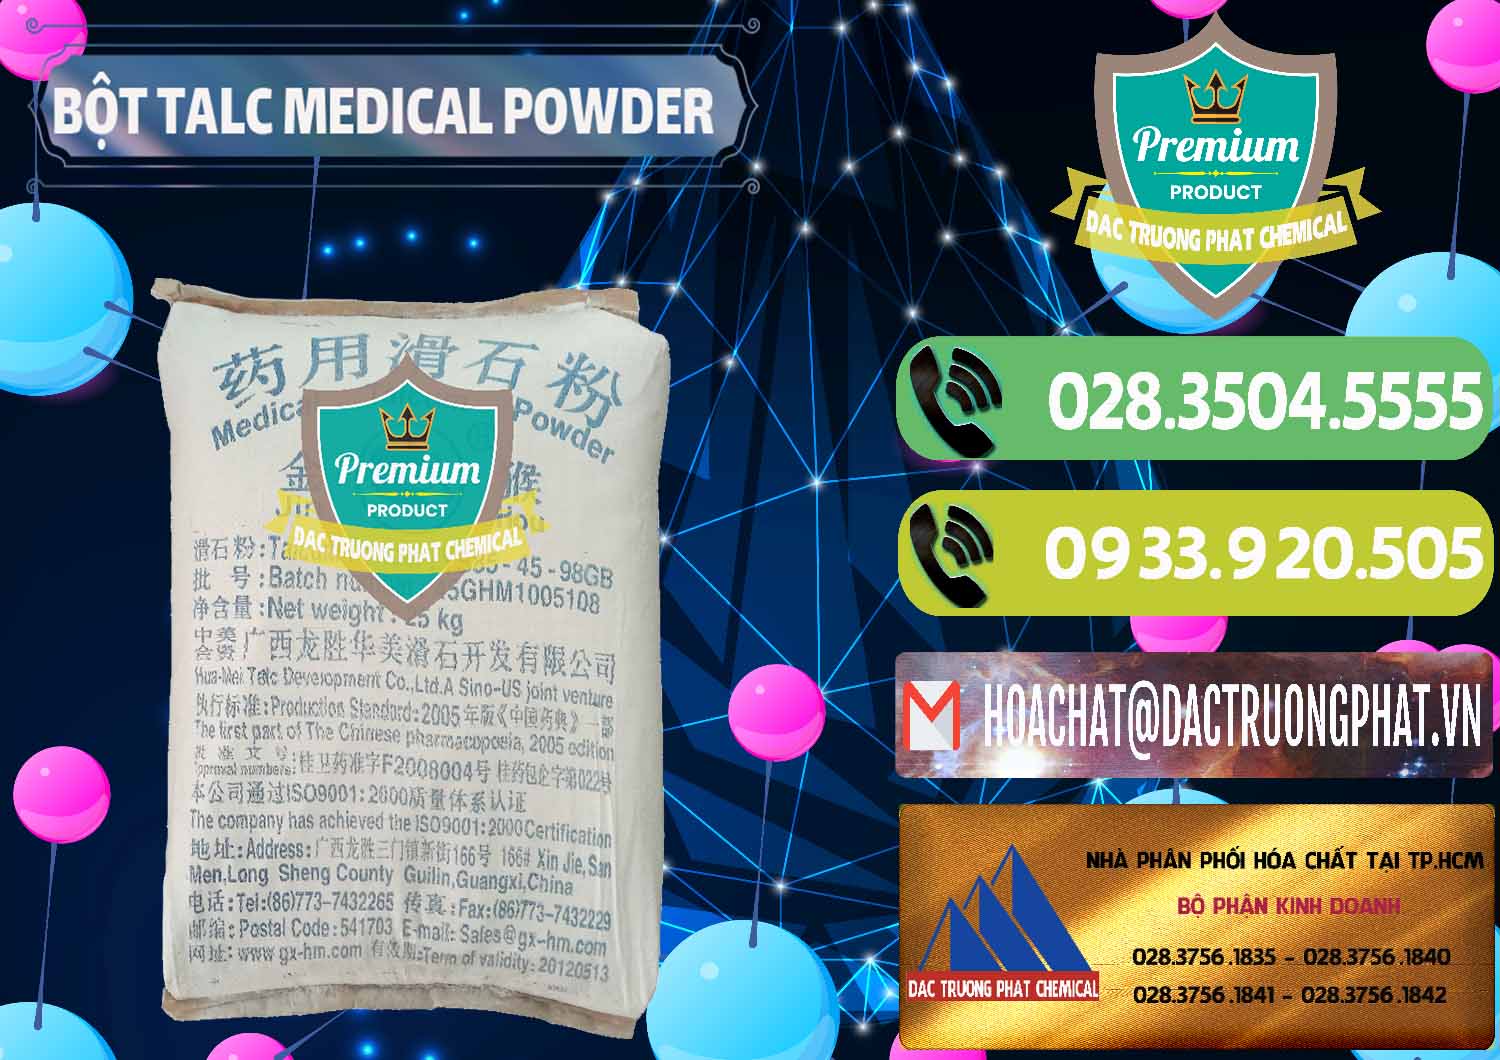 Cty bán ( cung ứng ) Bột Talc Medical Powder Trung Quốc China - 0036 - Công ty chuyên kinh doanh ( cung cấp ) hóa chất tại TP.HCM - hoachatmientay.vn